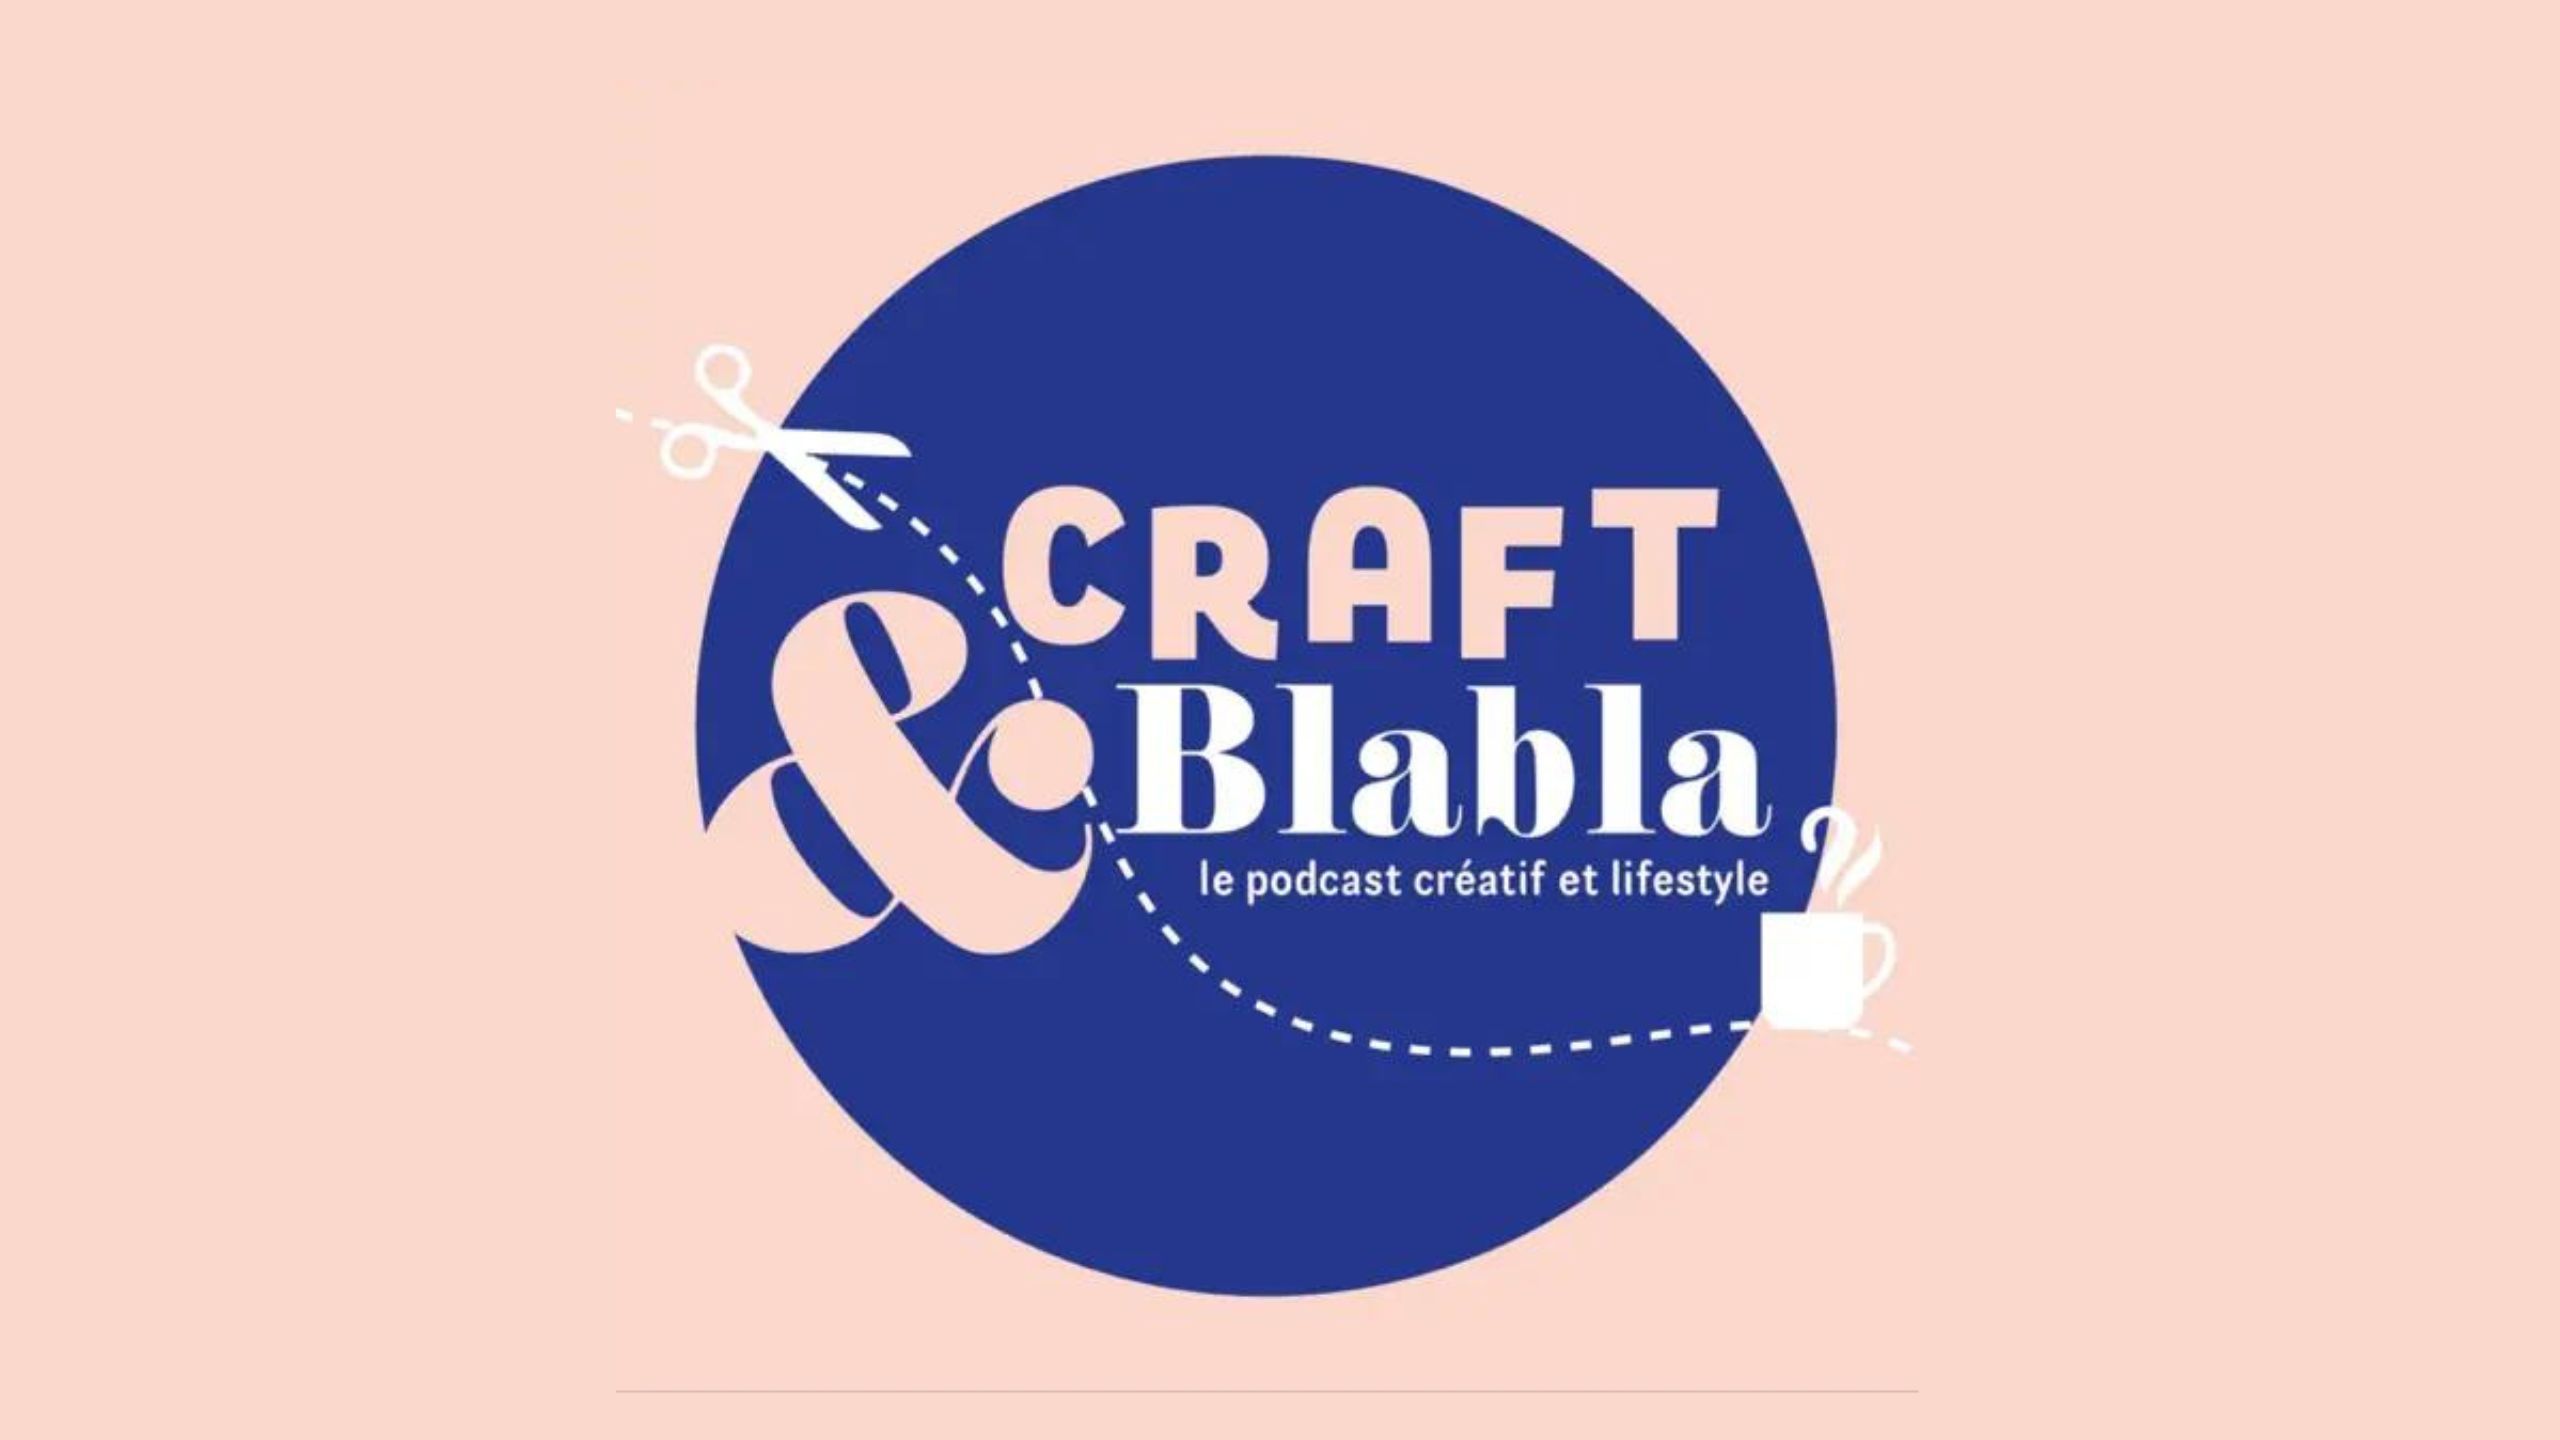 Ecoutez-nous sur Craft et Blabla